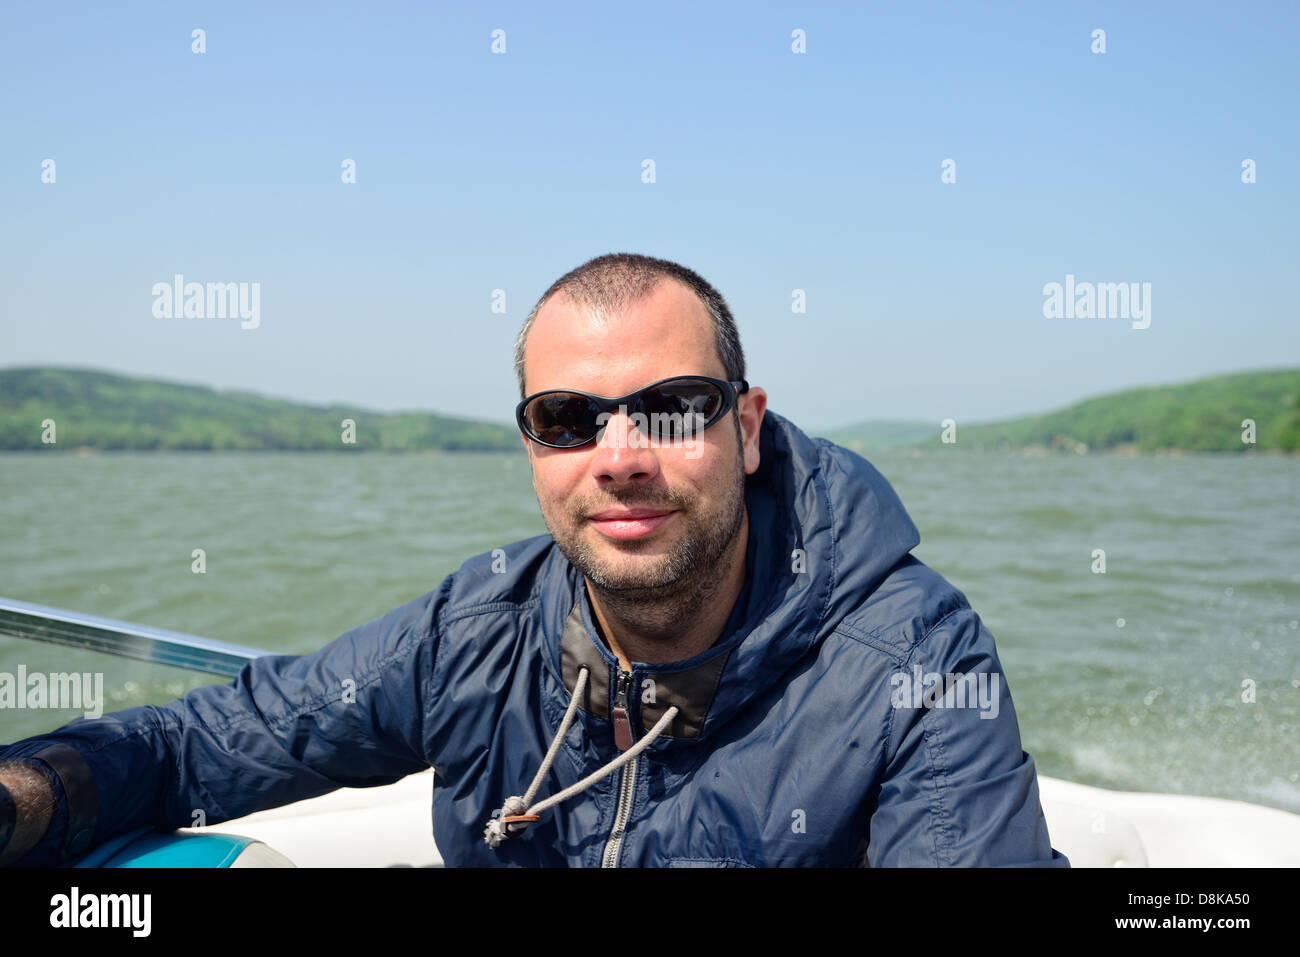 L'homme dans un bateau à moteur à la recherche de l'appareil photo Banque D'Images